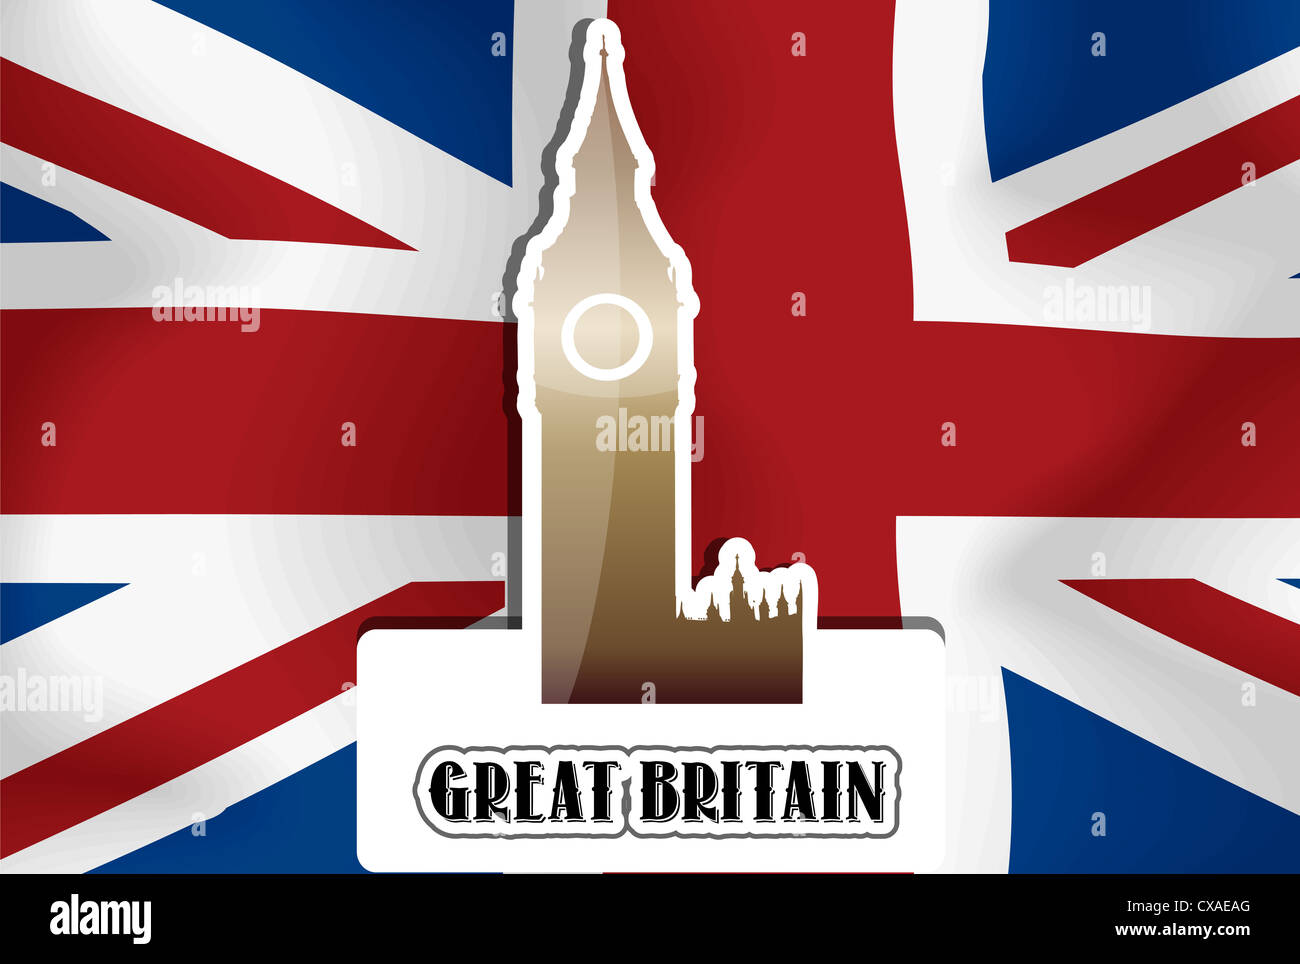 Royaume-uni, Grande Bretagne, drapeau britannique, Westminster Palace Tour de l'horloge, vector illustration Banque D'Images